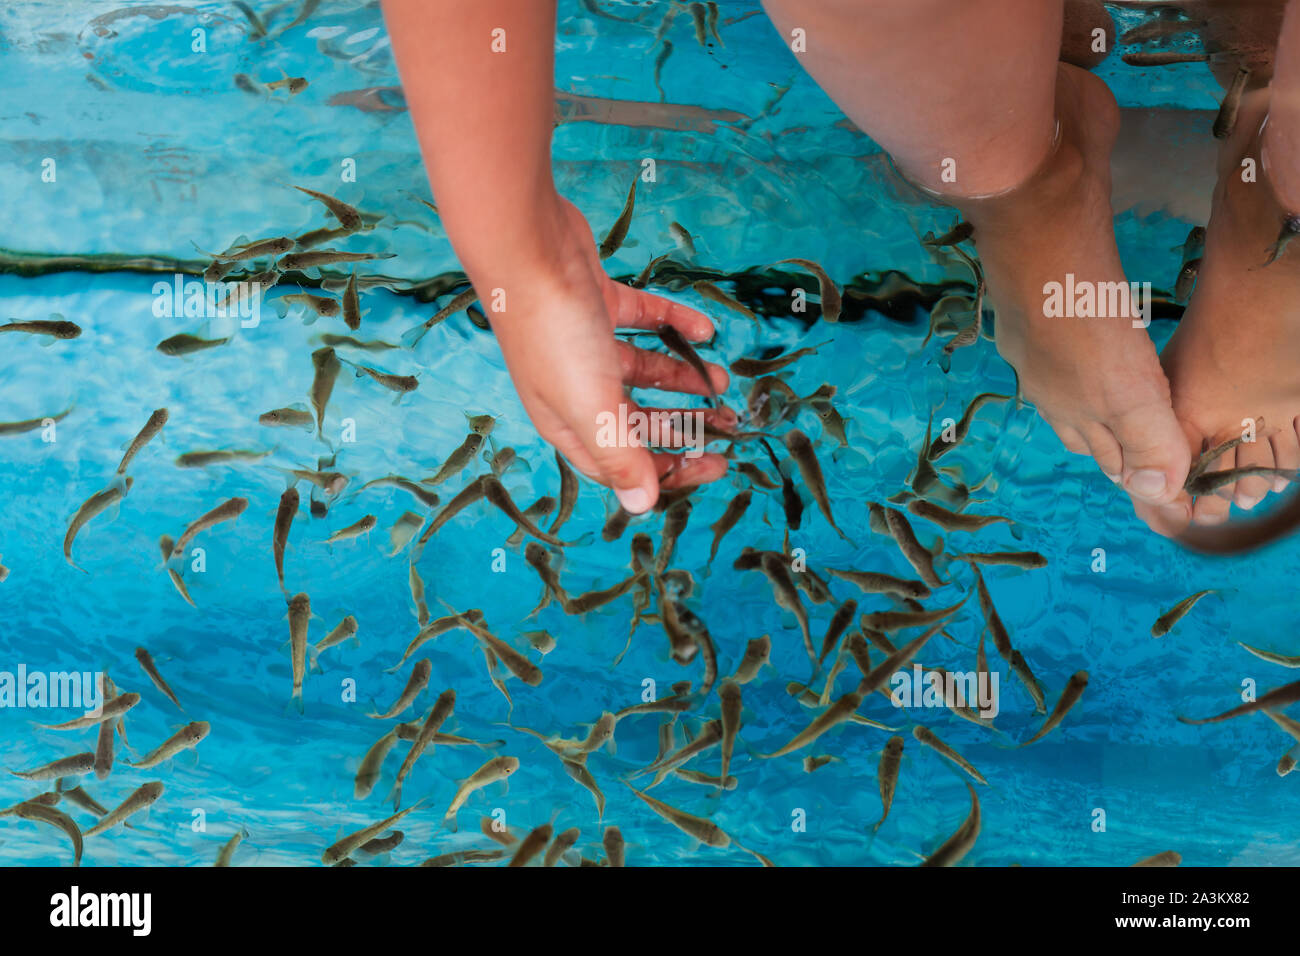 Doktor fisch Herde ist in einem Spa Aquarium in der Nähe der Hand des Kindes und die Füße. Garra rufa oder Rot garra Fisch Stockfoto